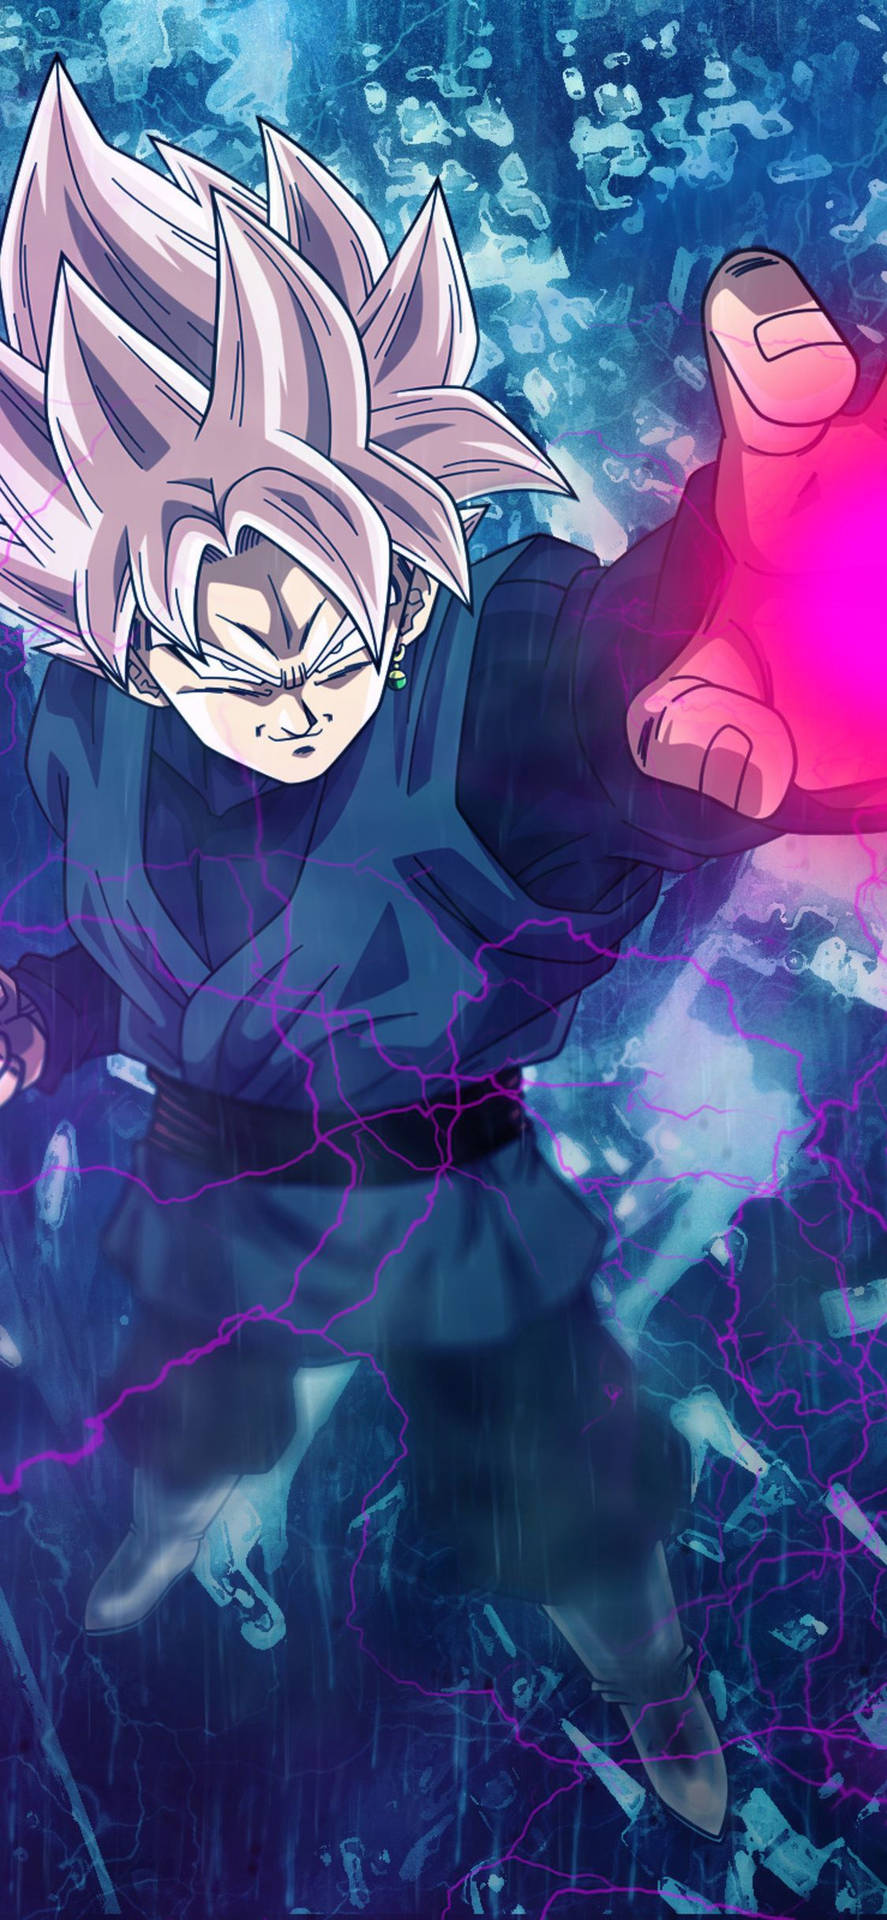 Suspenderet Blast Power Of Son Goku iPhone Wallpaper Wallpaper